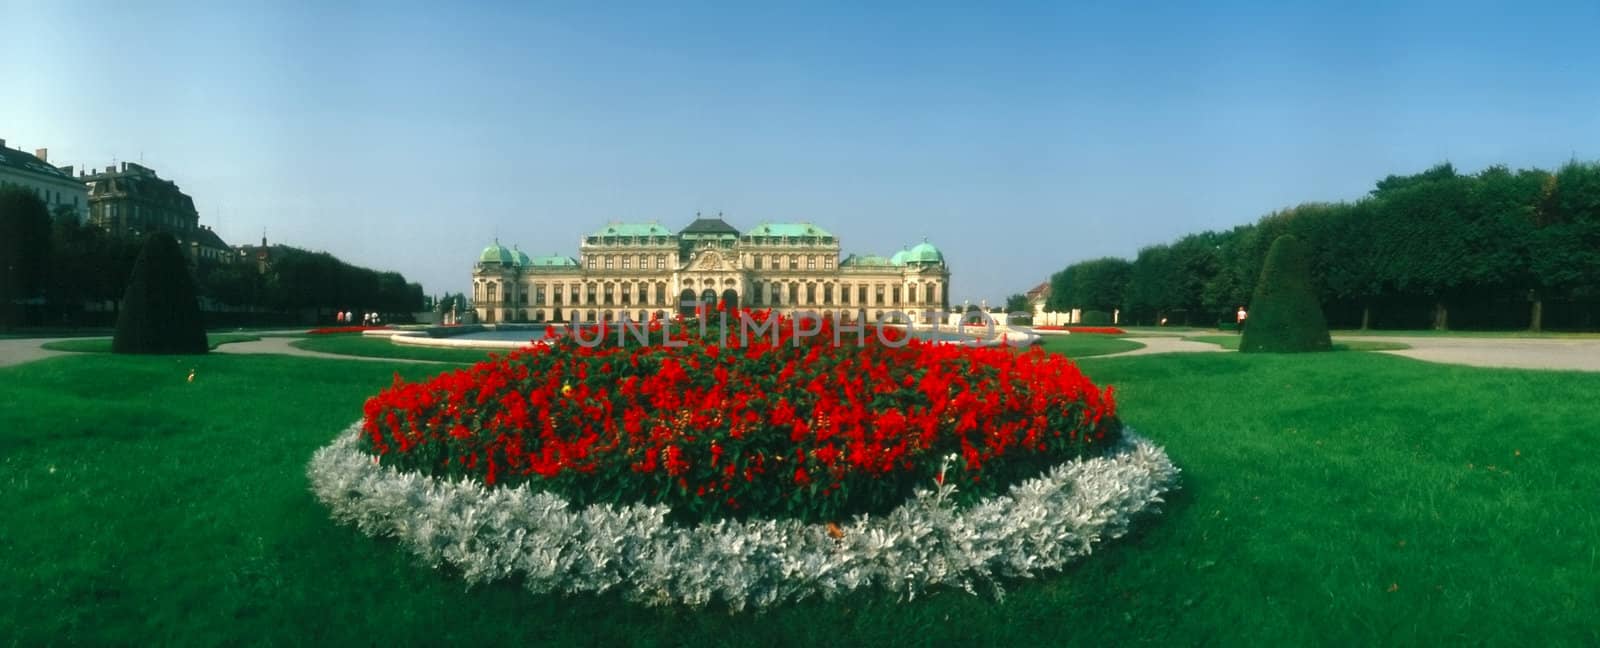 Palace Belvedere, Vienna by jol66